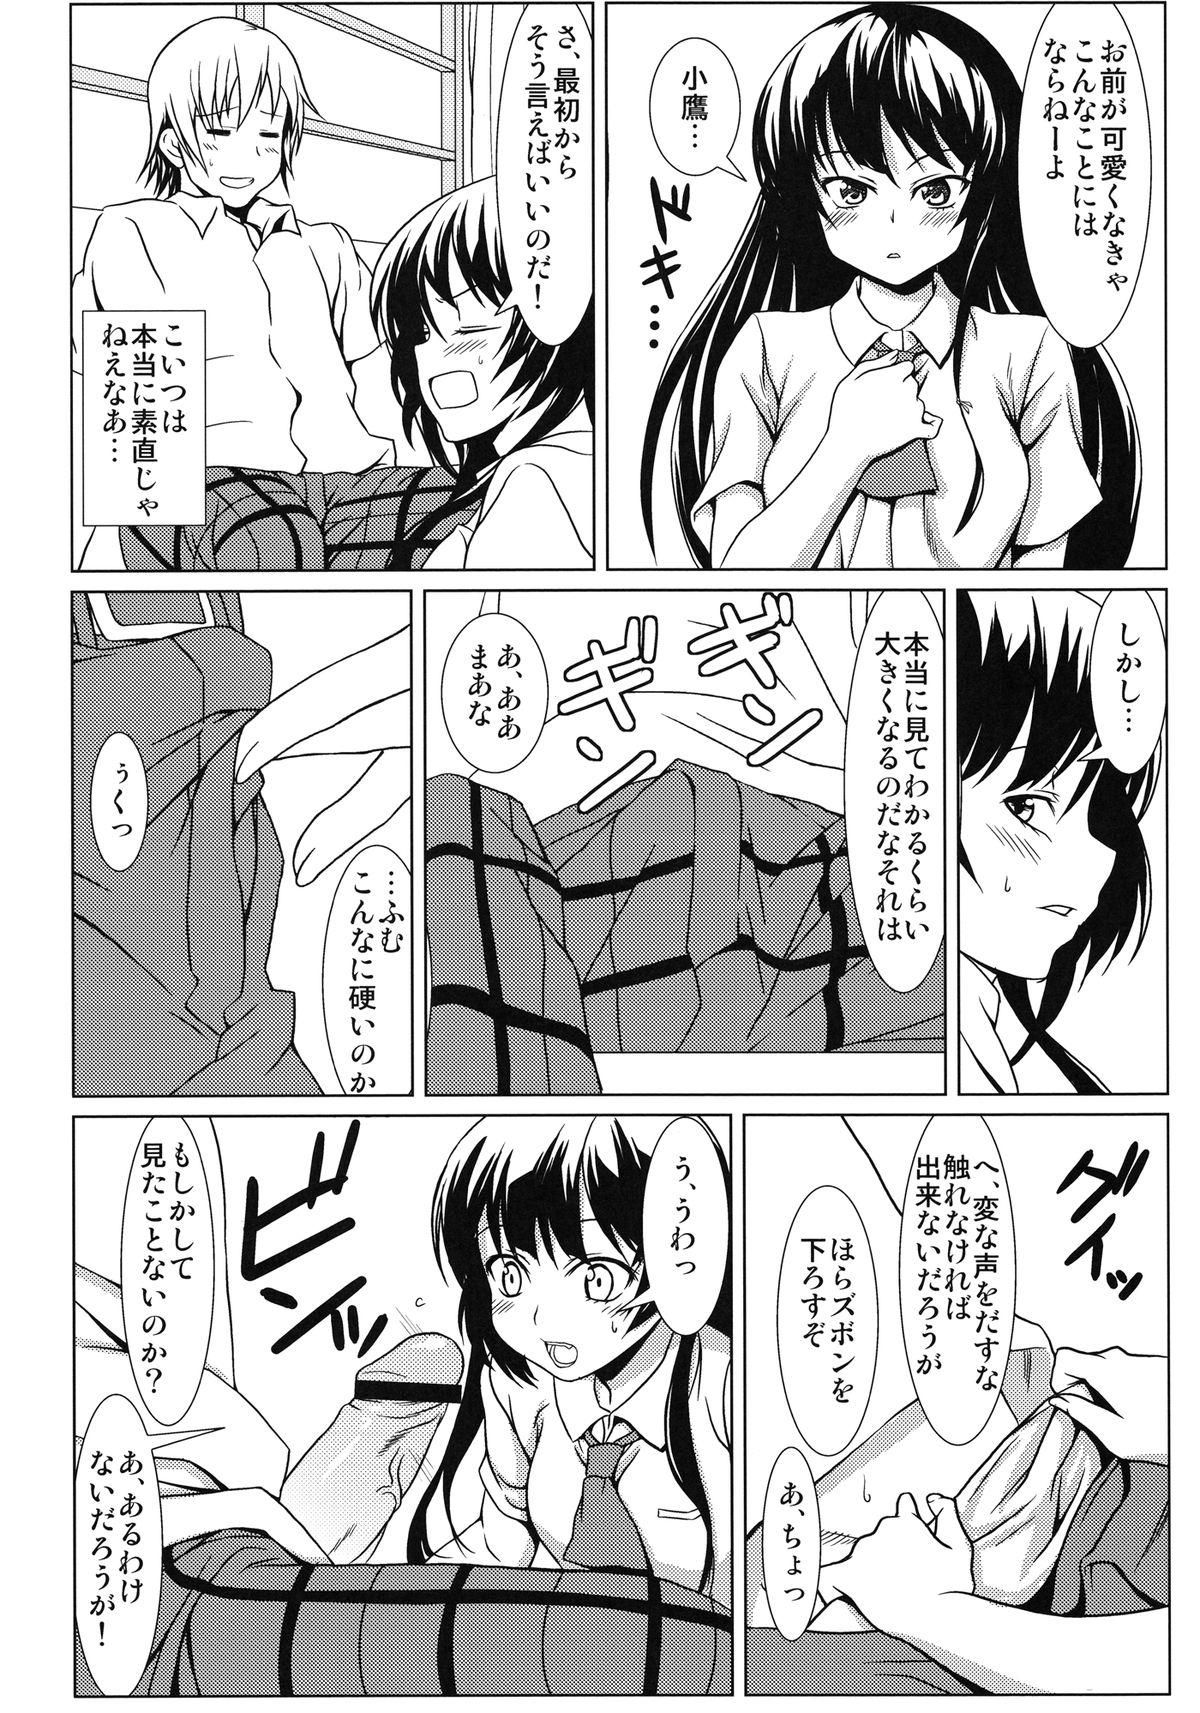 Female Orgasm Yozora no Mukou - Boku wa tomodachi ga sukunai Tia - Page 8